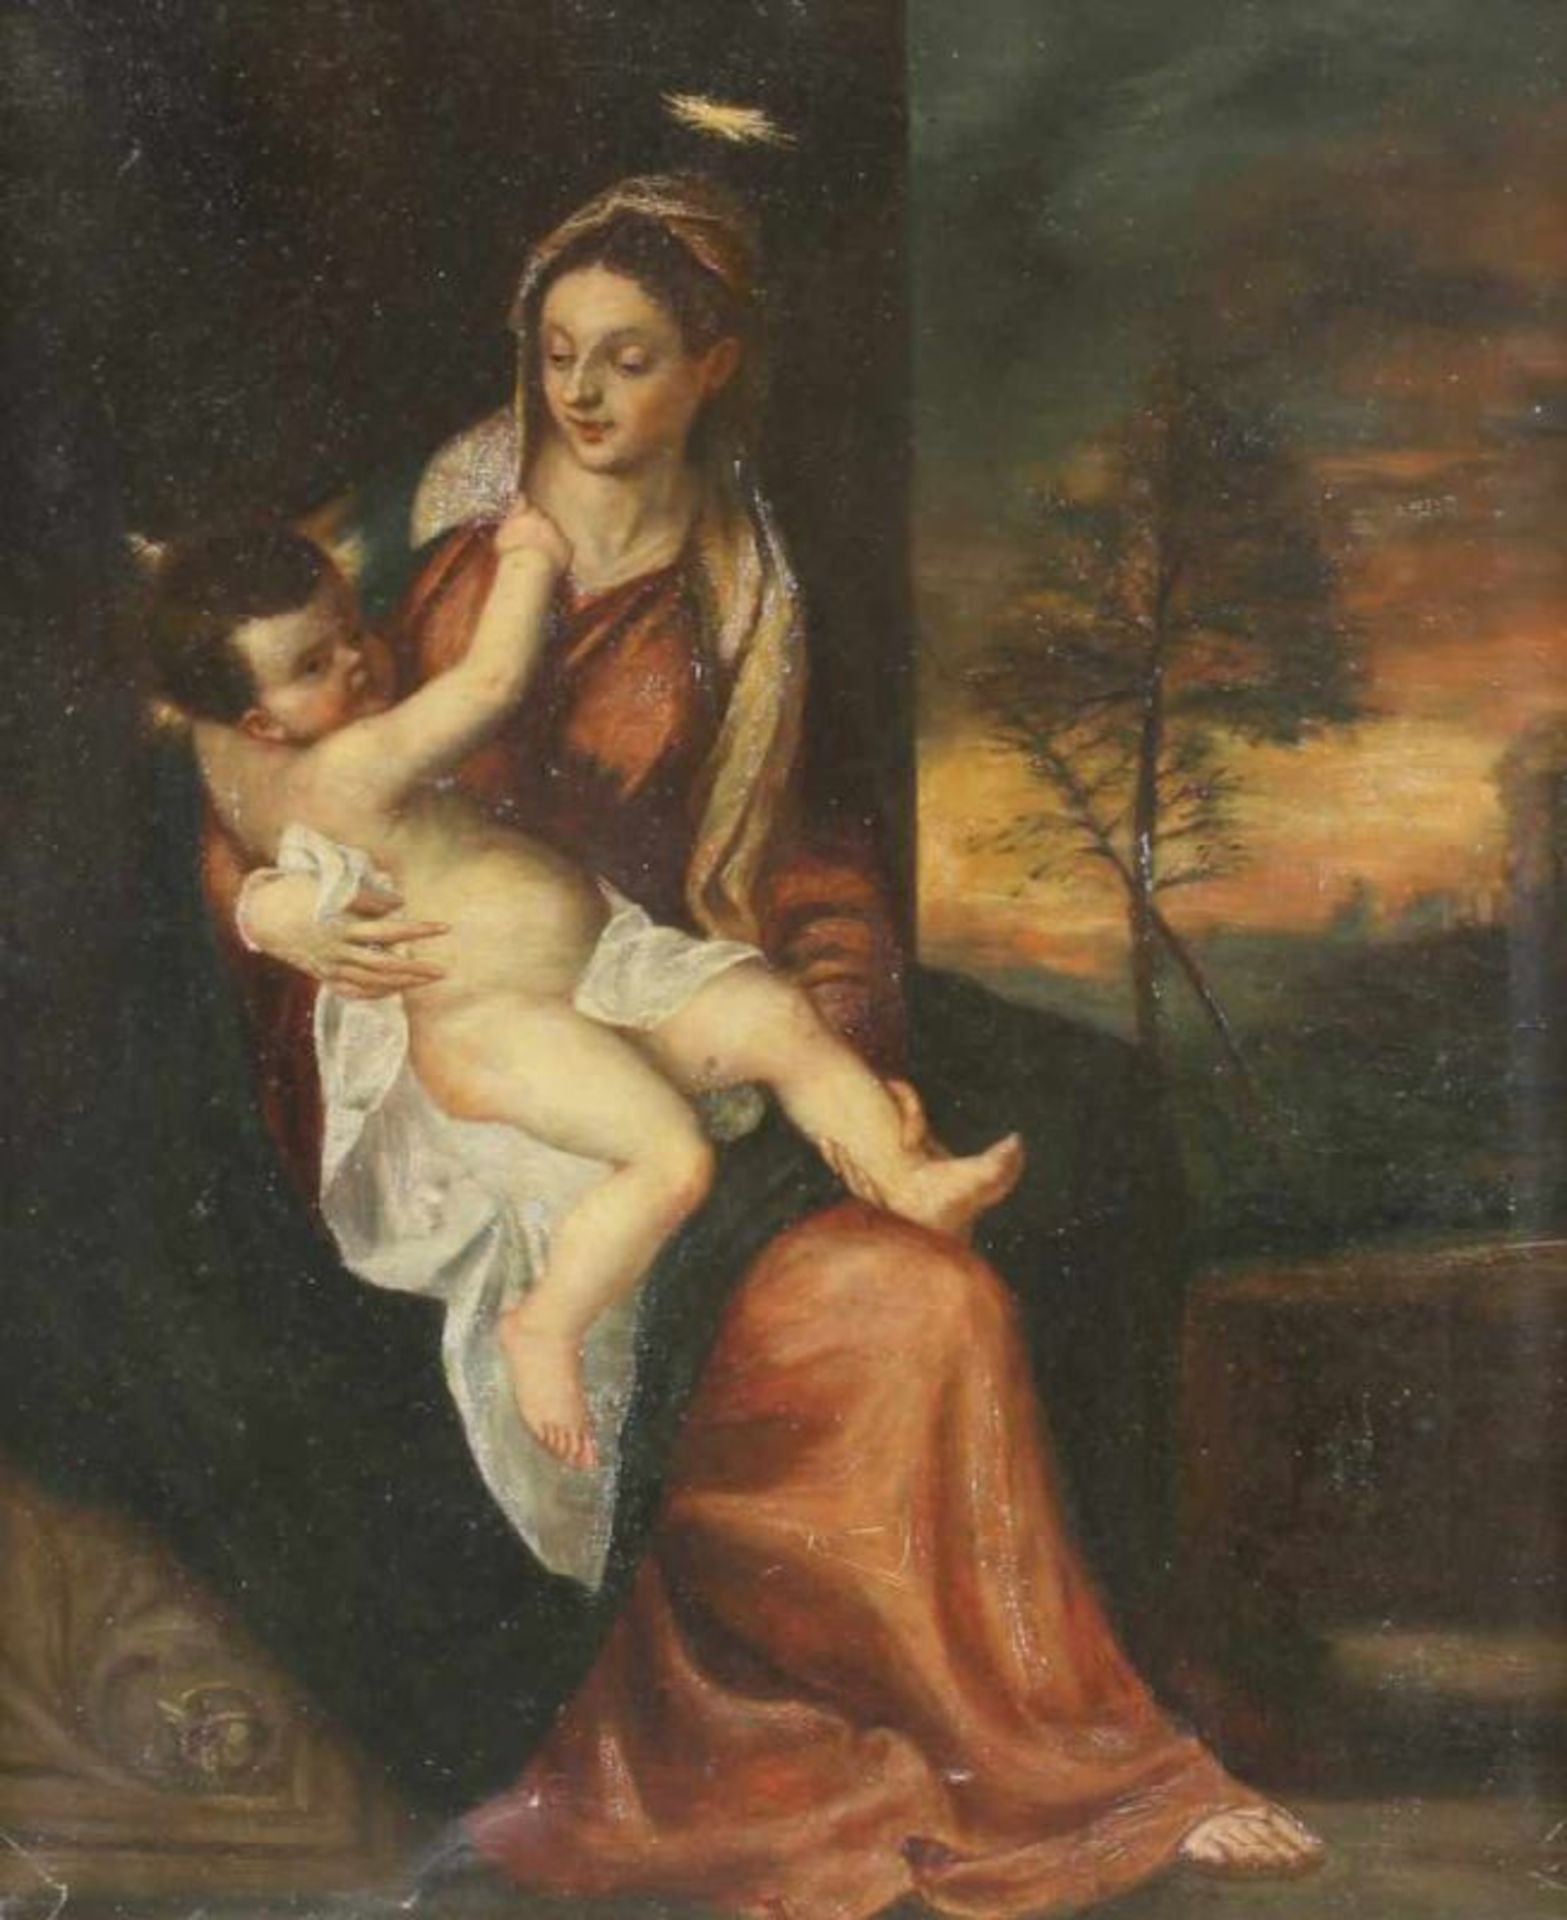 Kopist (Ende 19. Jh.), "Maria mit Kind", Öl auf Leinwand, nach Tizian, verso bezeichnet und